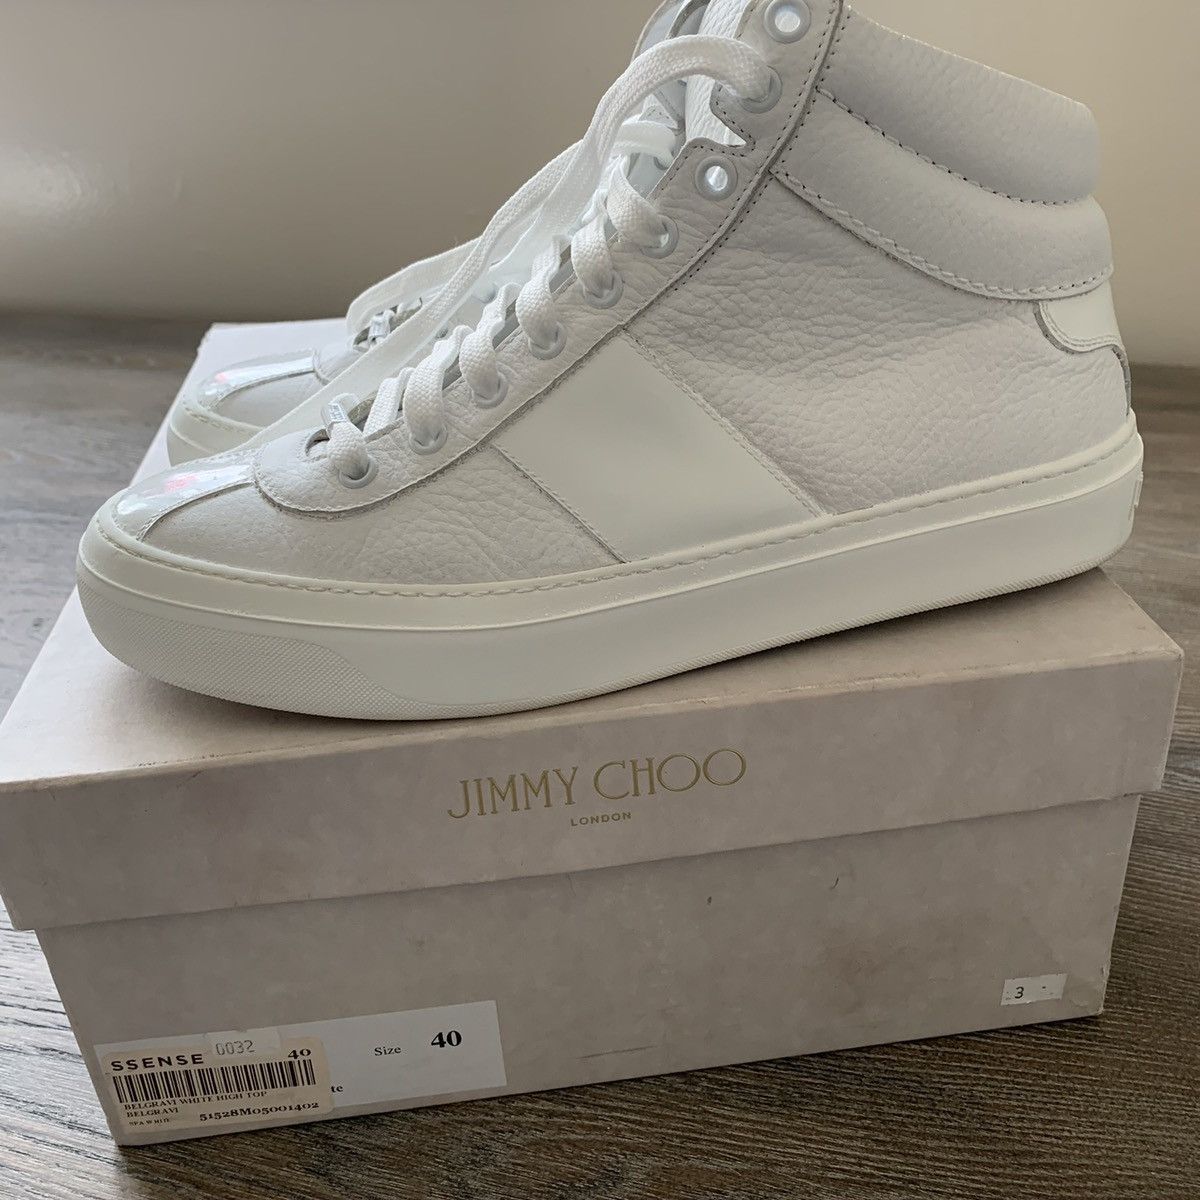 Jimmy Choo Jimmy Choo Belgravia White Size 40 | Grailed